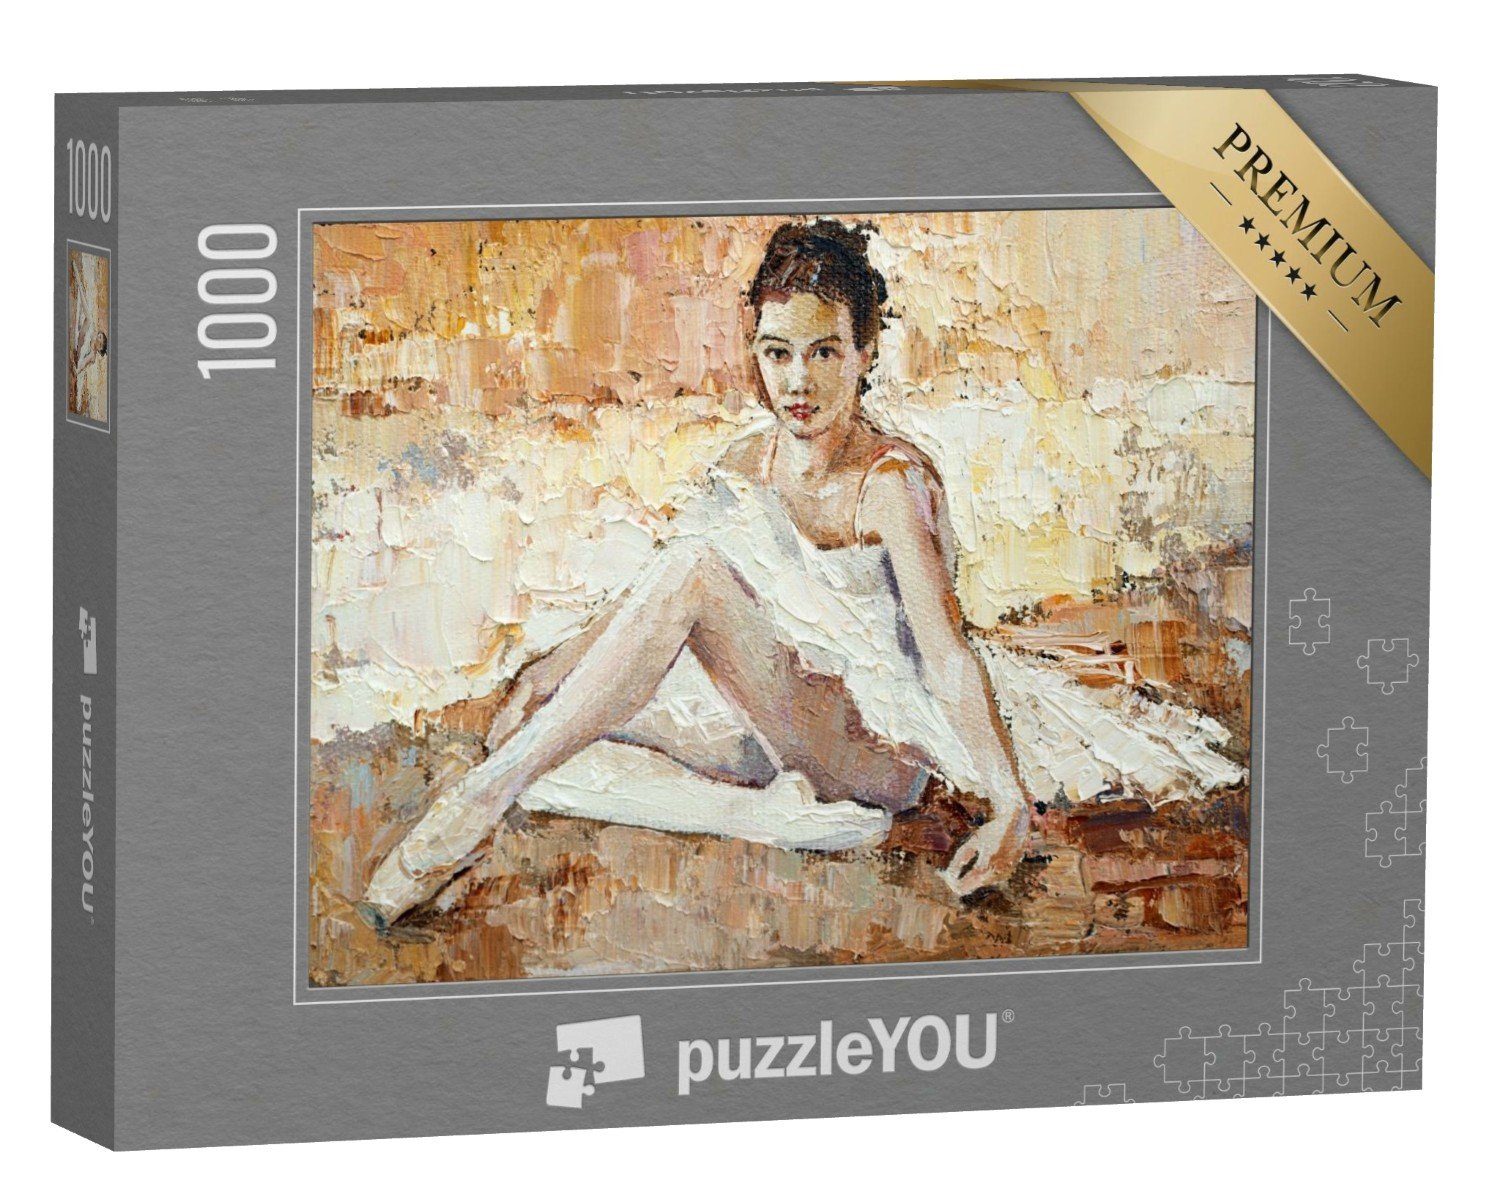 puzzleYOU Puzzle Ölgemälde: Ballerina mit Spitzenschuhen, 1000 Puzzleteile, puzzleYOU-Kollektionen Gemälde, 100 Teile